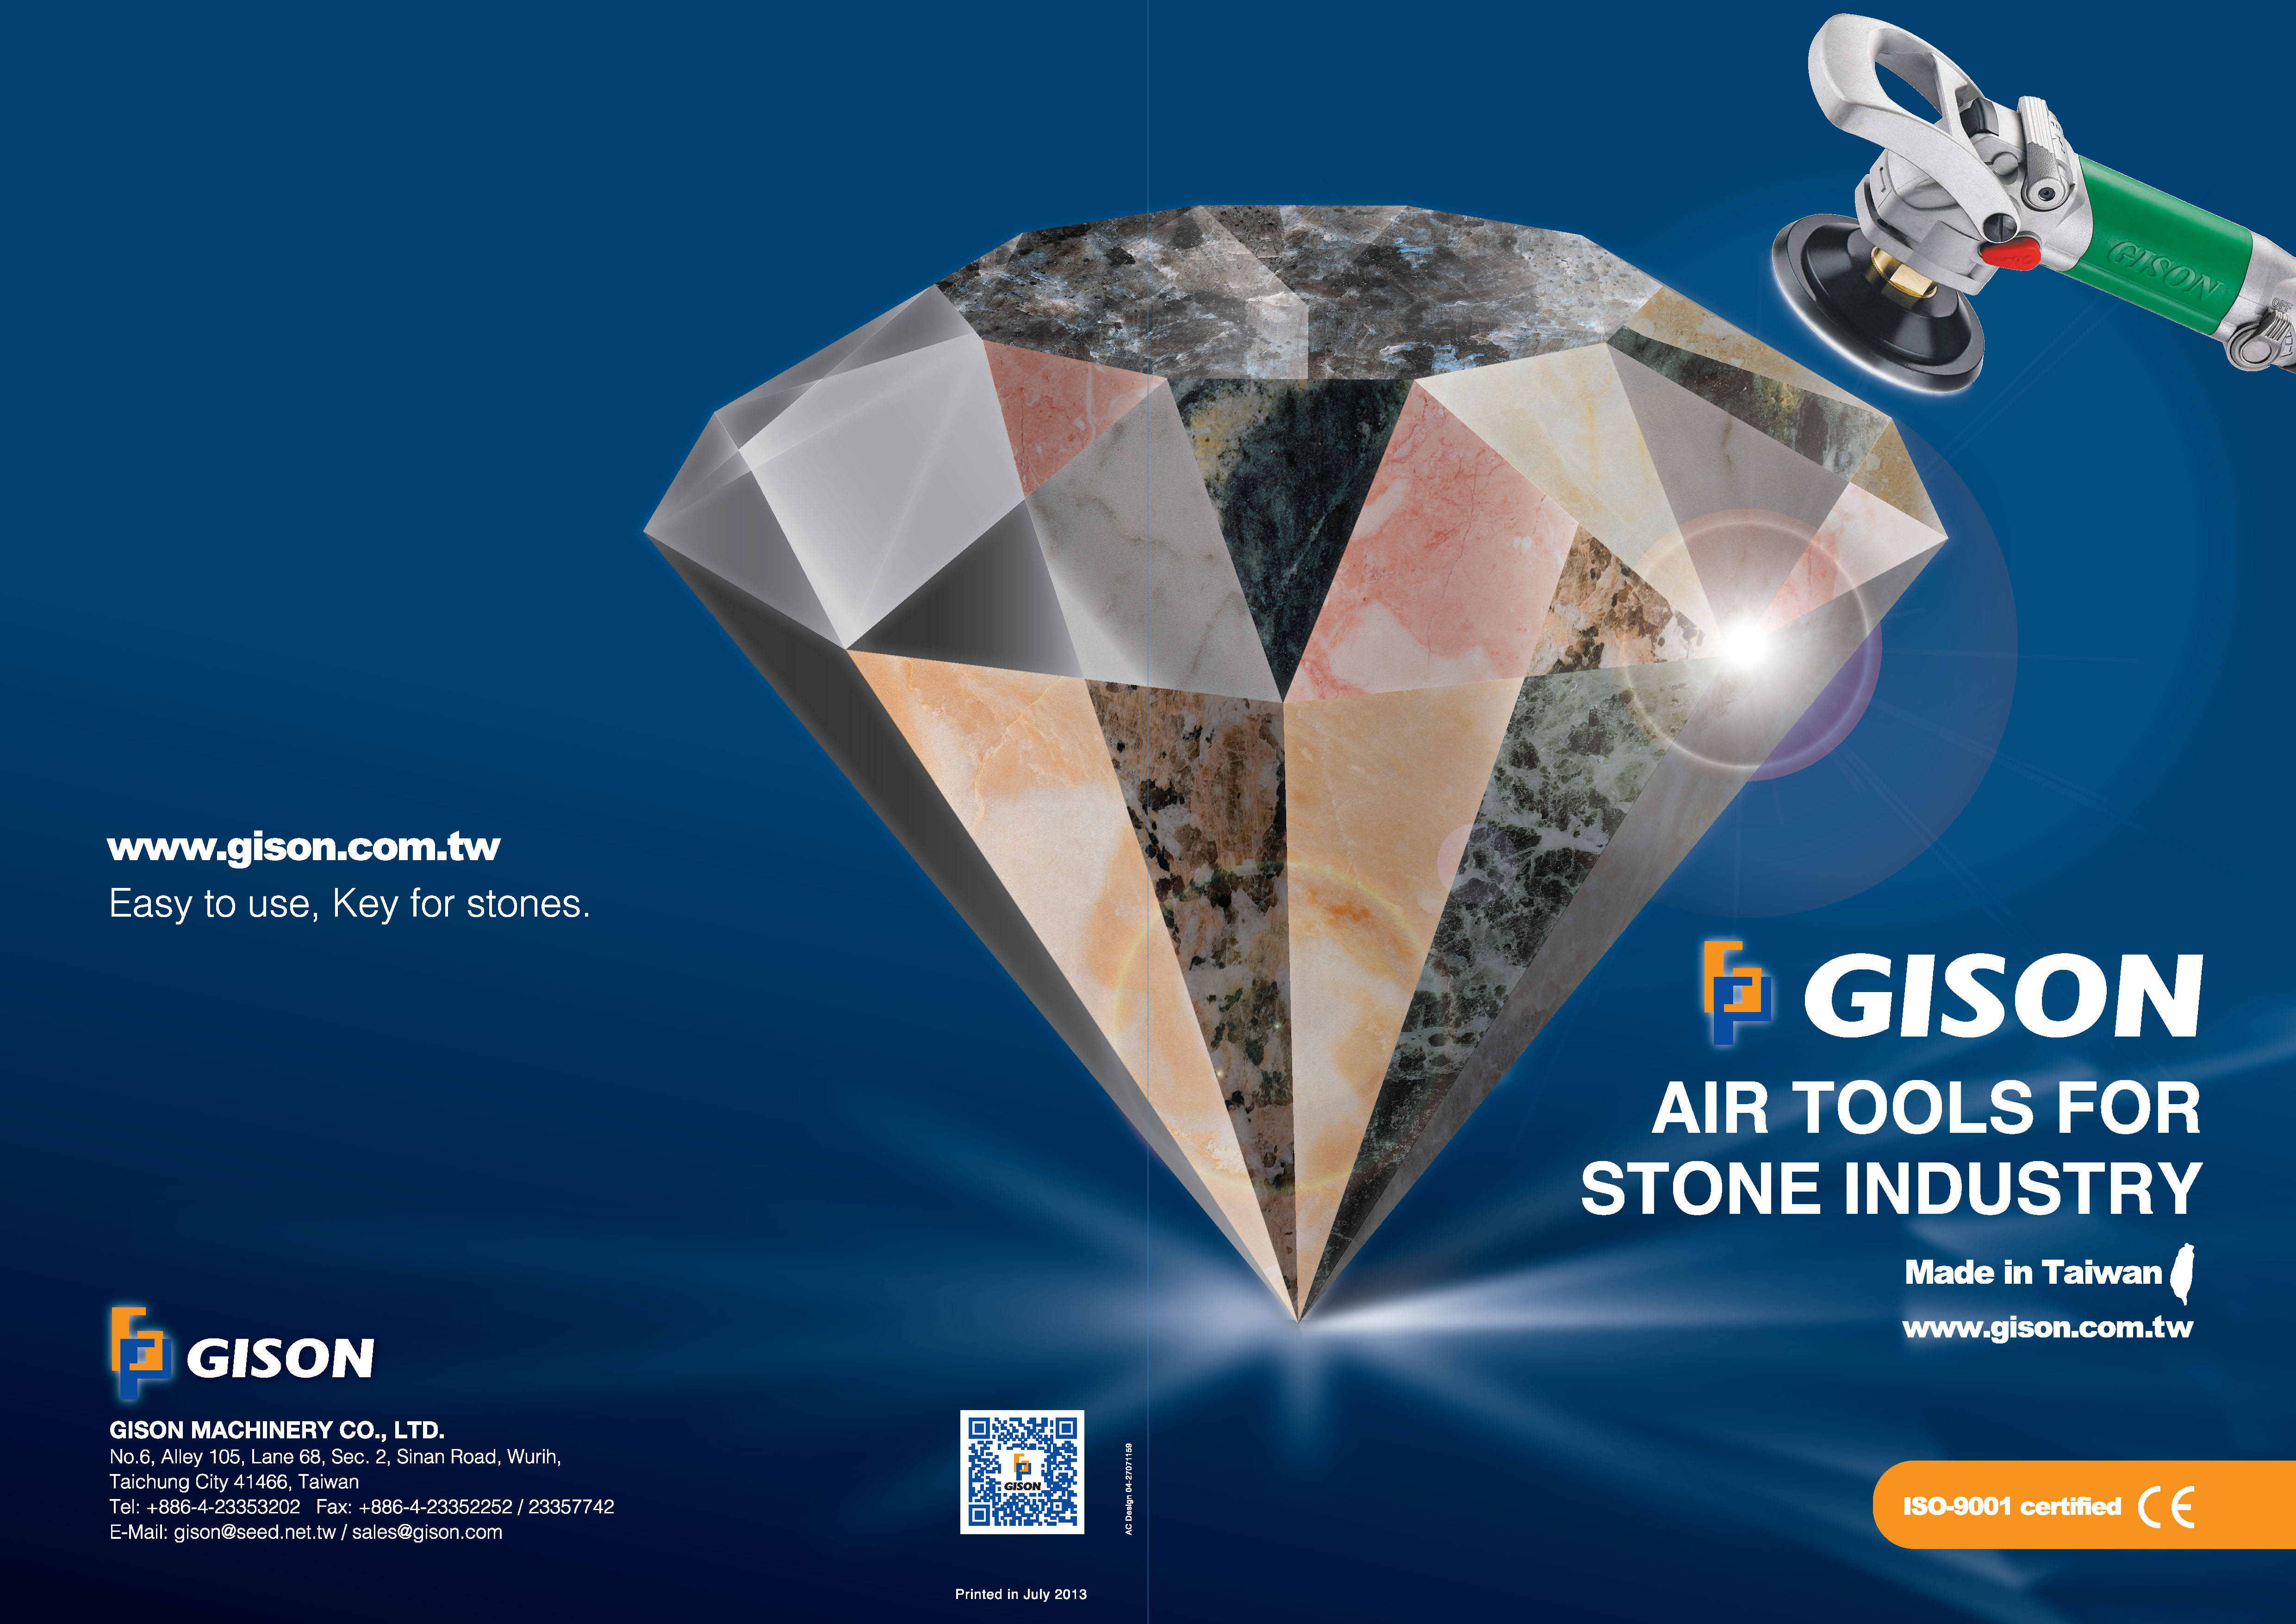 2013-2014
GISONNatte luchtgereedschappen voor steen, marmer, graniet Catalogus - 2013-2014
GISONNatte luchtgereedschap voor steen, marmer, graniet